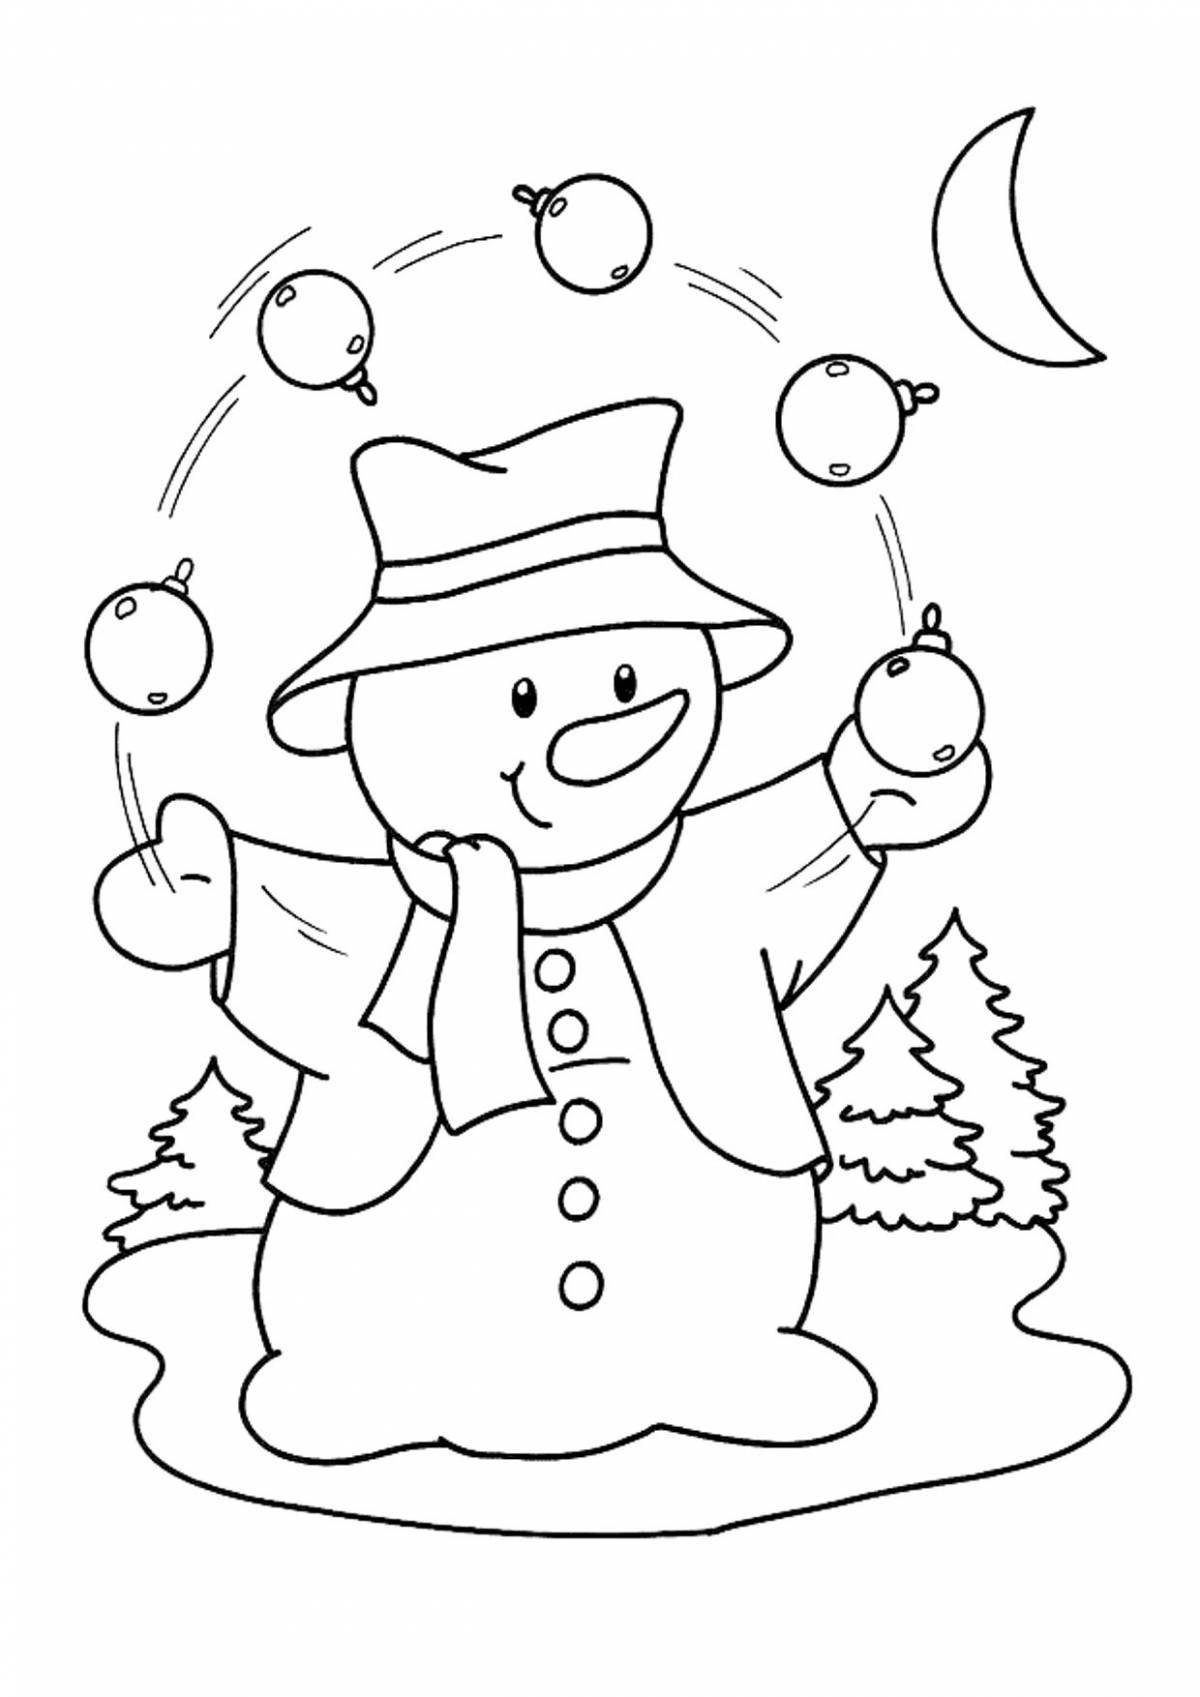 Занимательный рисунок снеговика для детей